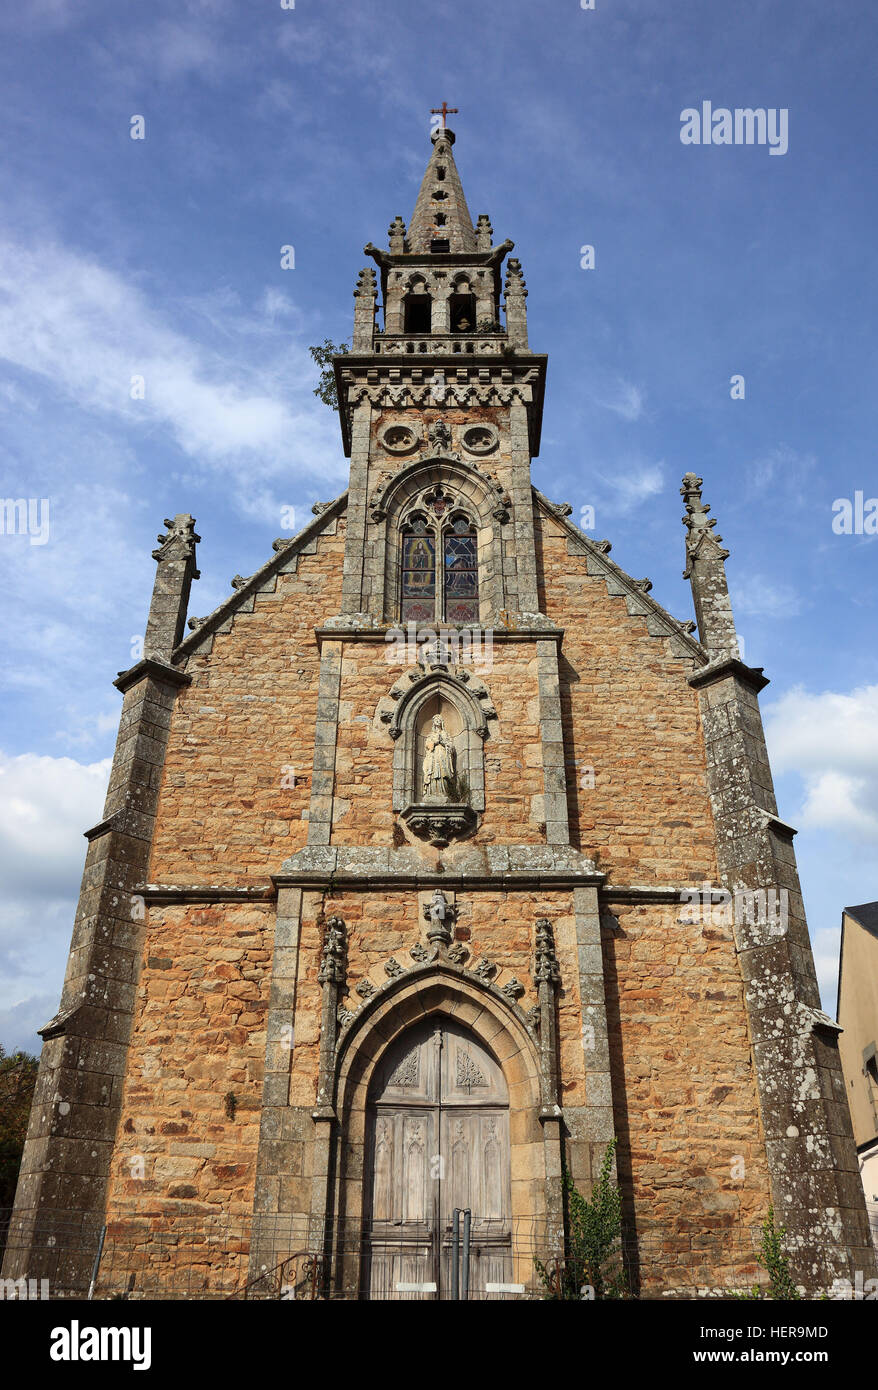 Frankreich, regione Bretagne, Auray, Kapelle Notre-Dame-de-Lourdes in der Altstadt Foto Stock